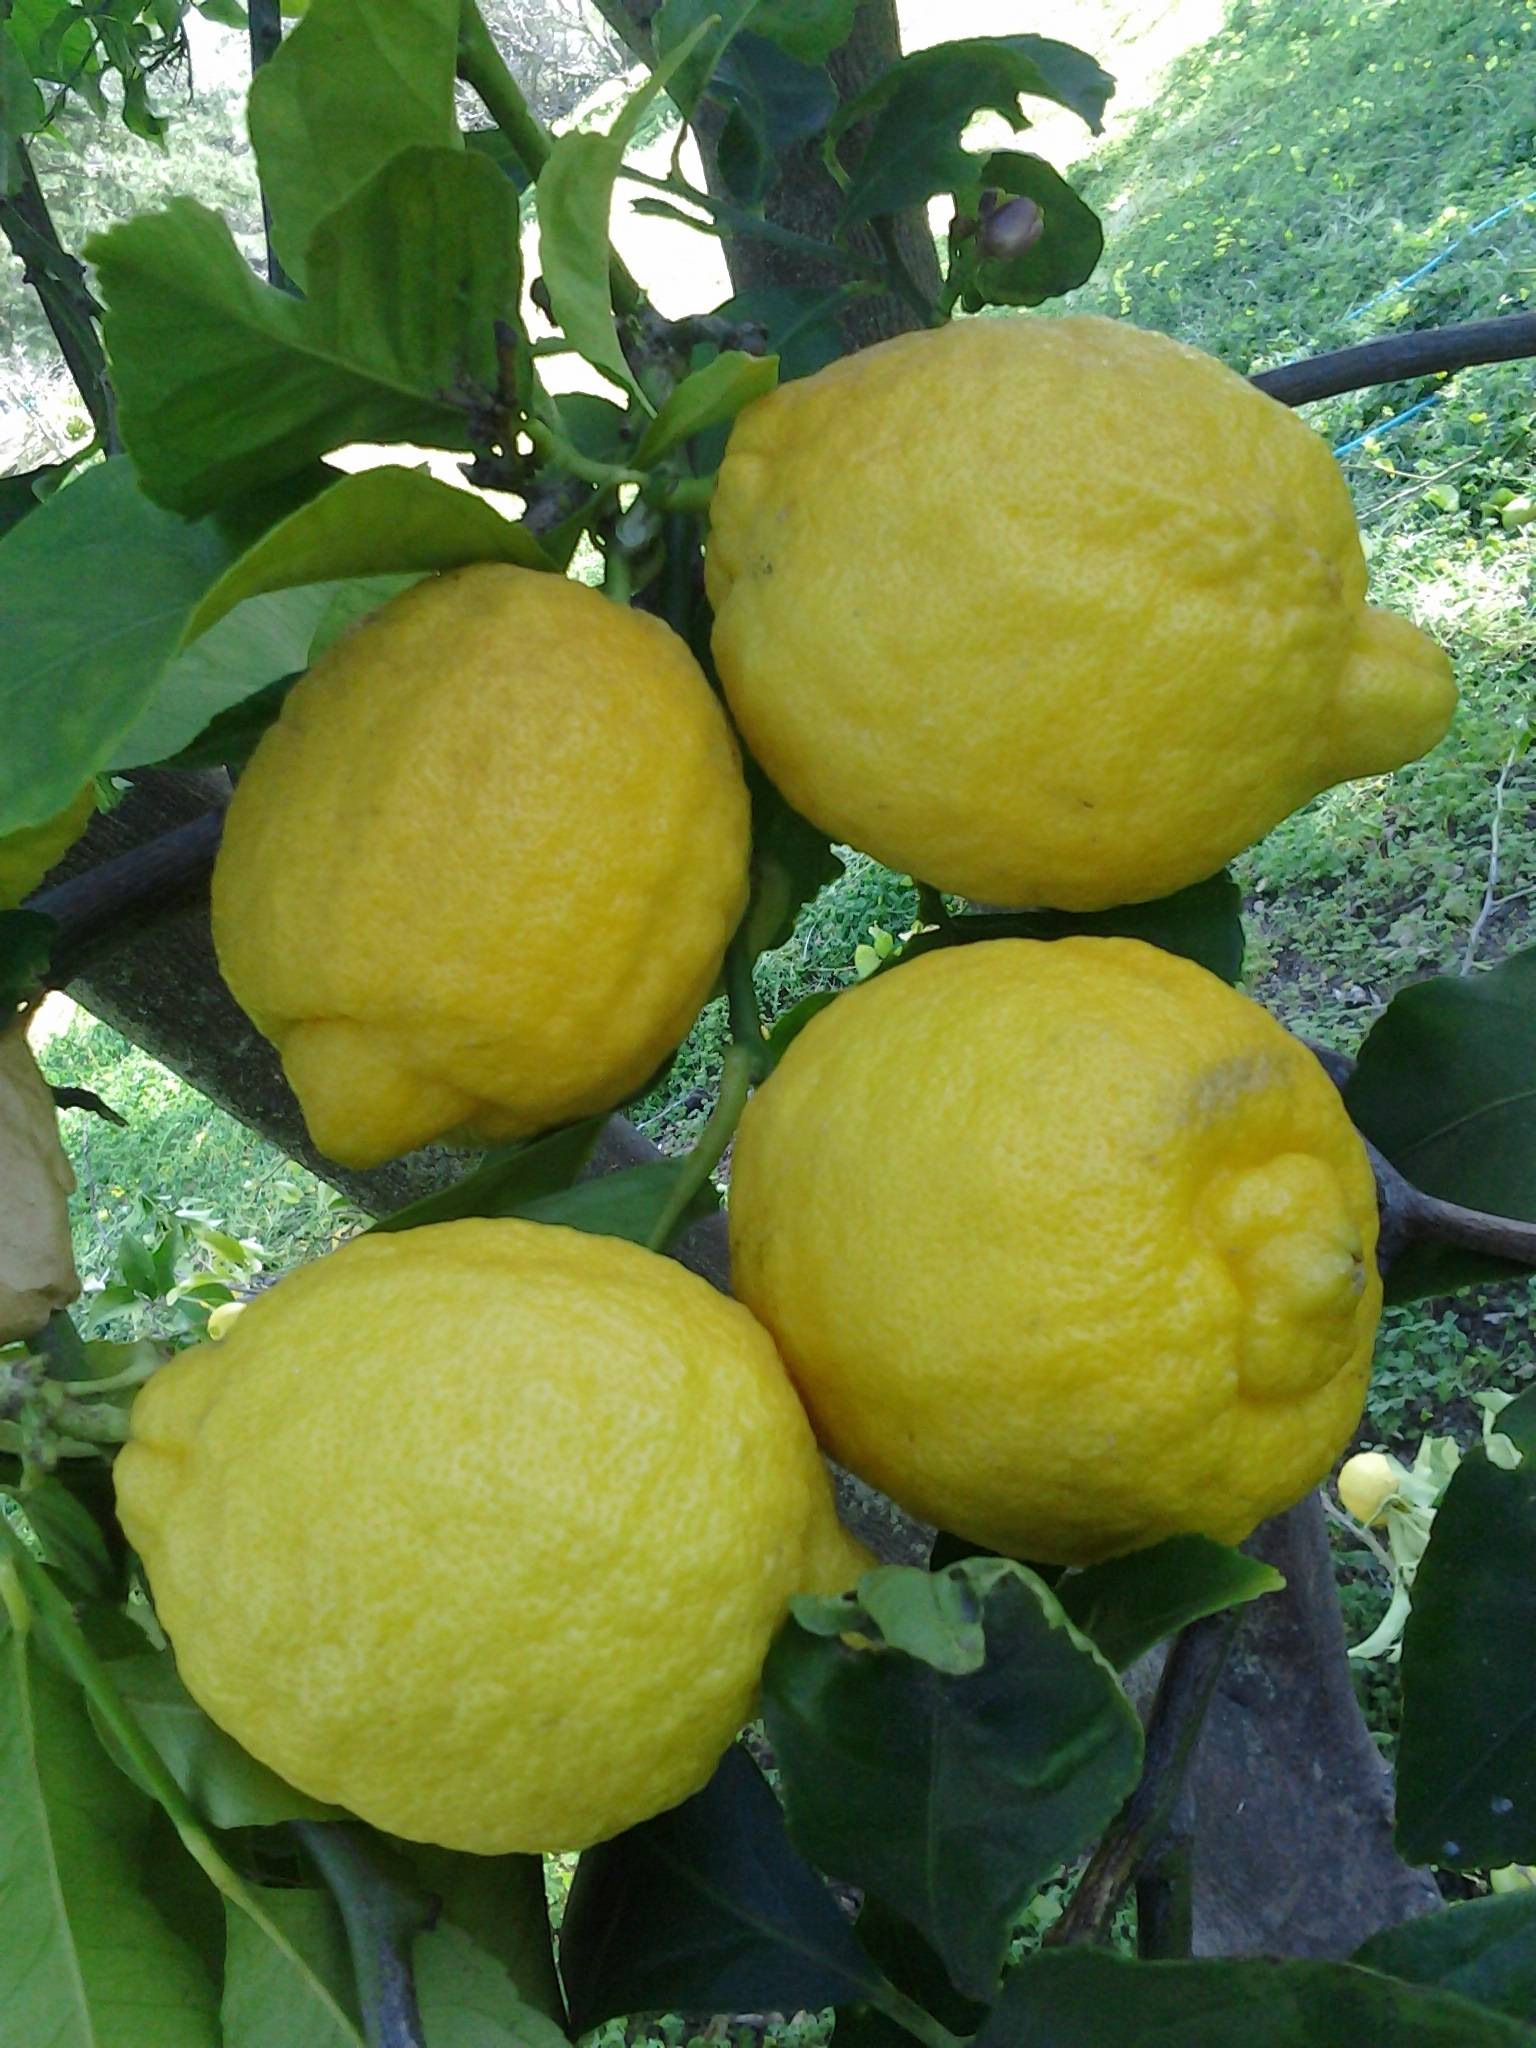 Сорта лимонов с фото и описанием: для домашнего выращивания, гибриды